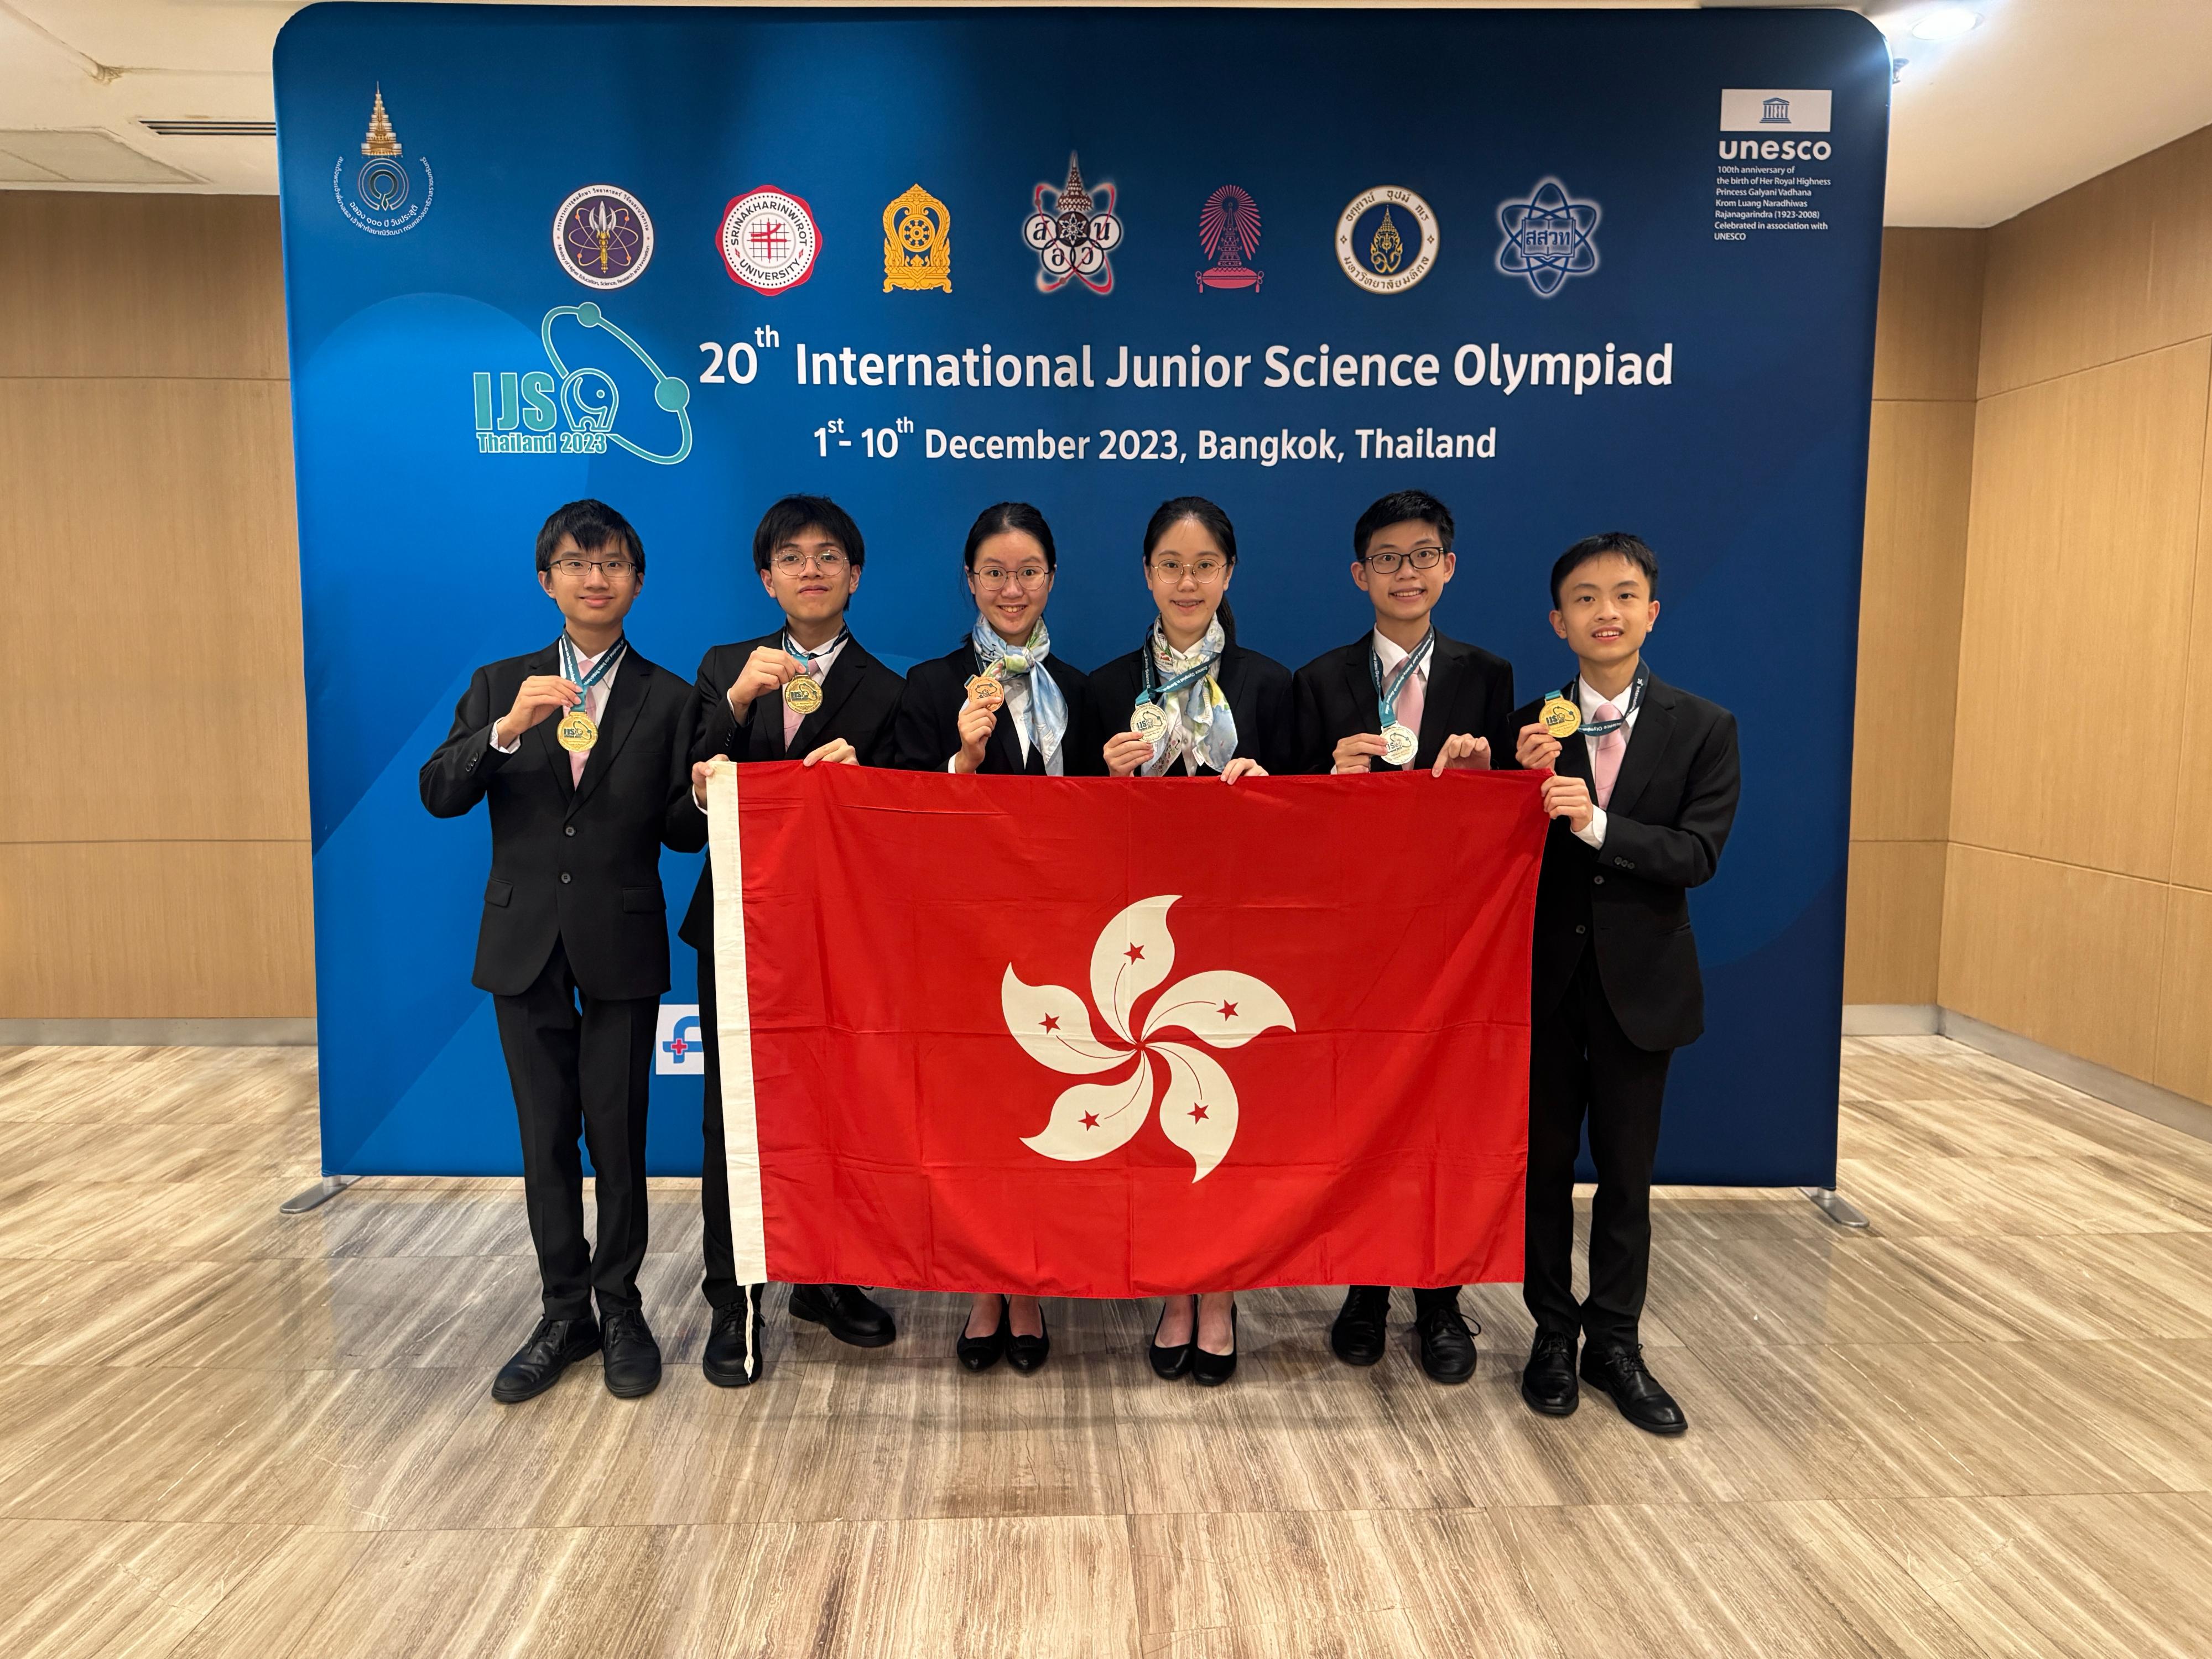 六名學生代表香港參加十二月一至十日在泰國舉行的第20屆「國際初中科學奧林匹克」，表現卓越。他們是（左起）江曜宏、黎日朗、辛信晞、李欣霖、曾啟宏和宋子傲。

